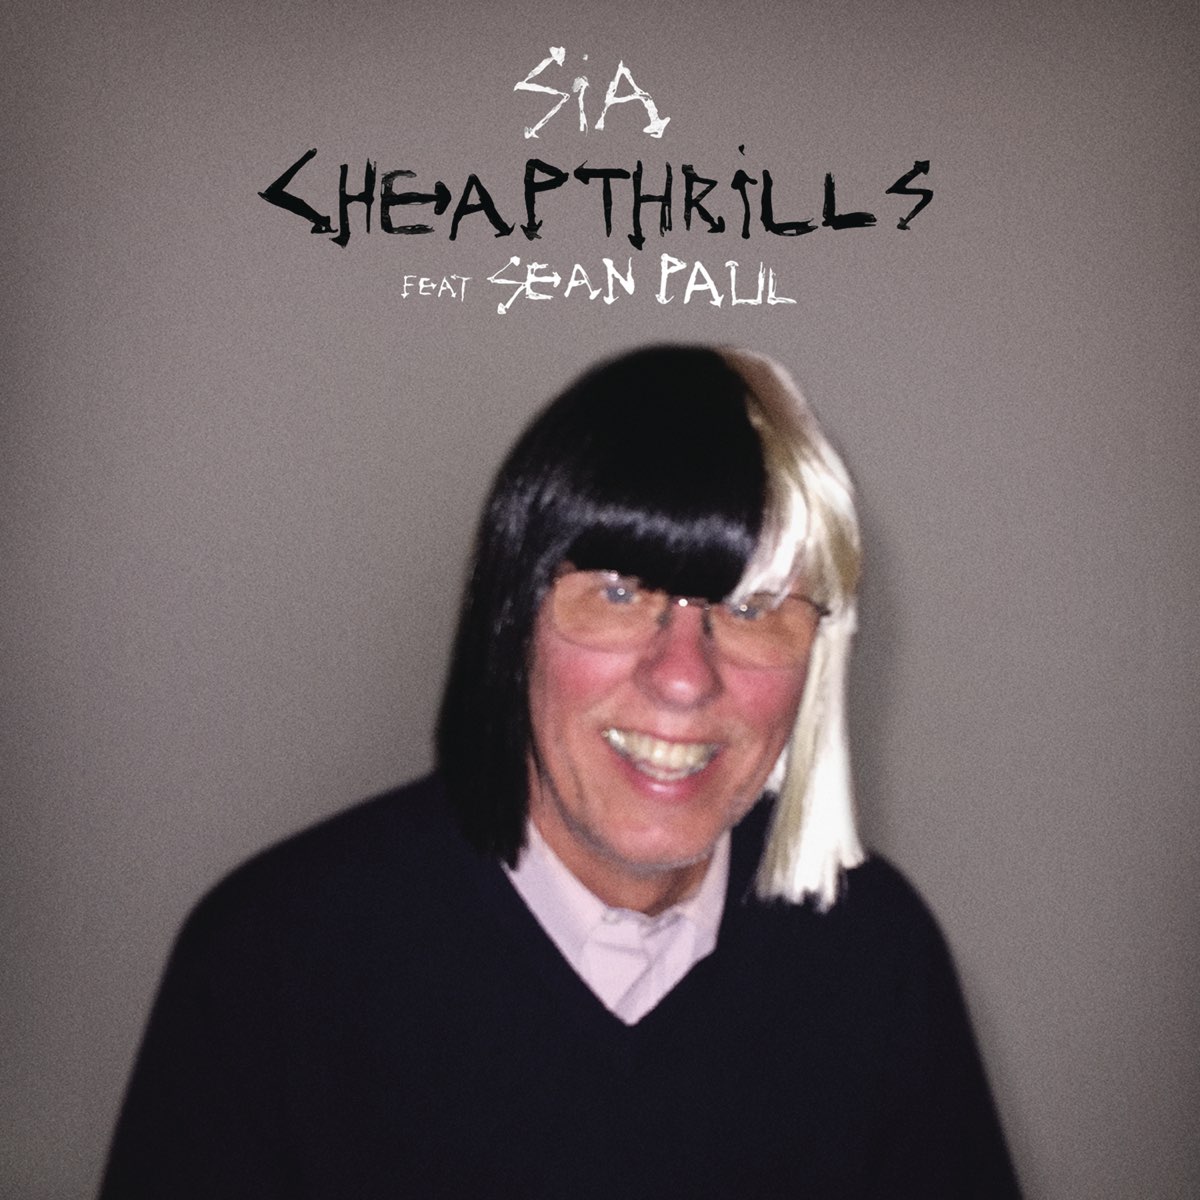 ‎Cheap Thrills (feat. Sean Paul) Single Album by Sia Apple Music